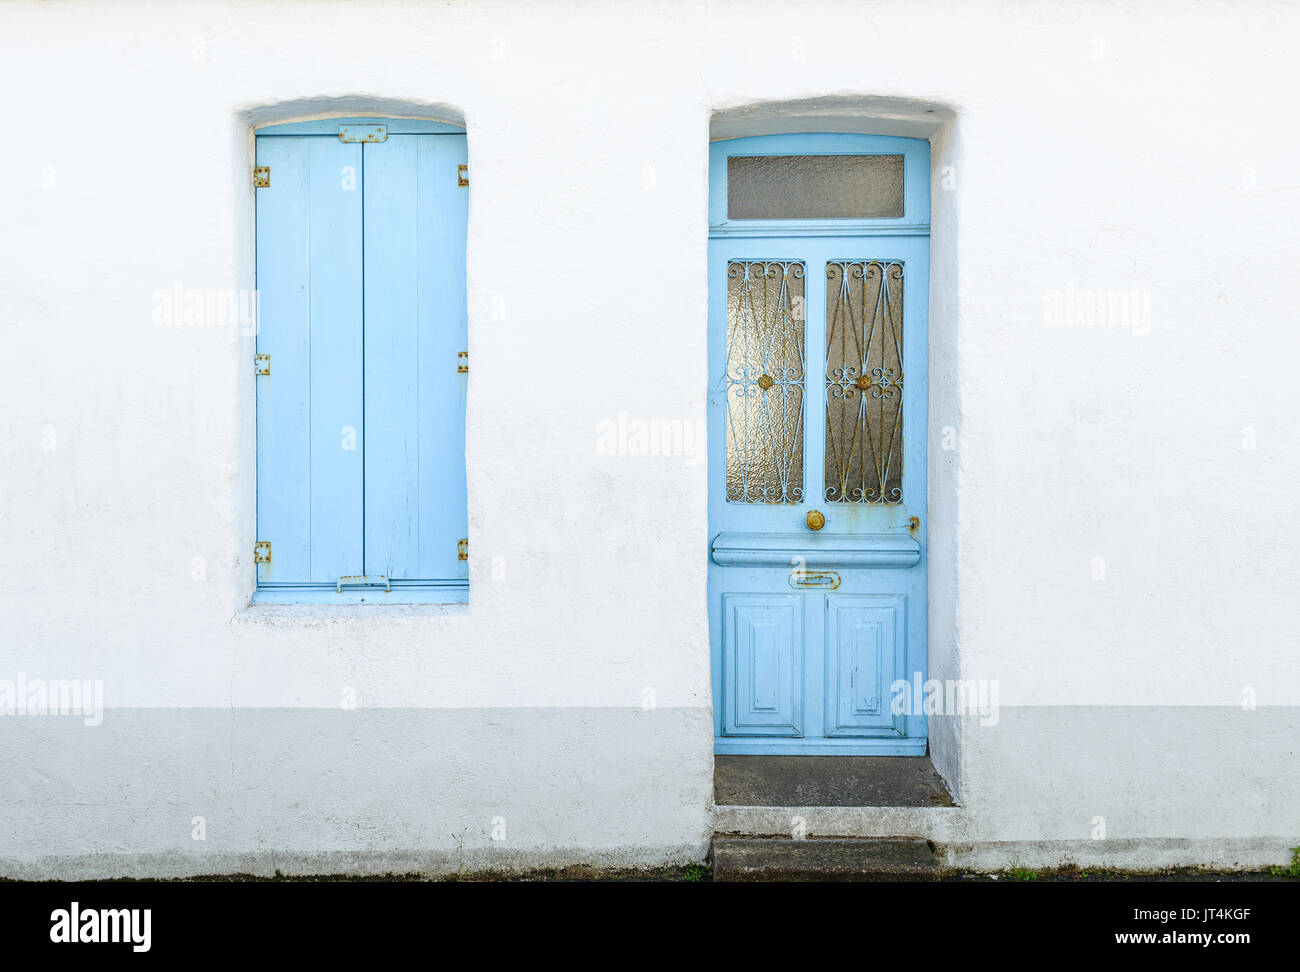 Façade de maison avec stores bleu pastel et porte dans l'île de Noirmoutier, France Banque D'Images